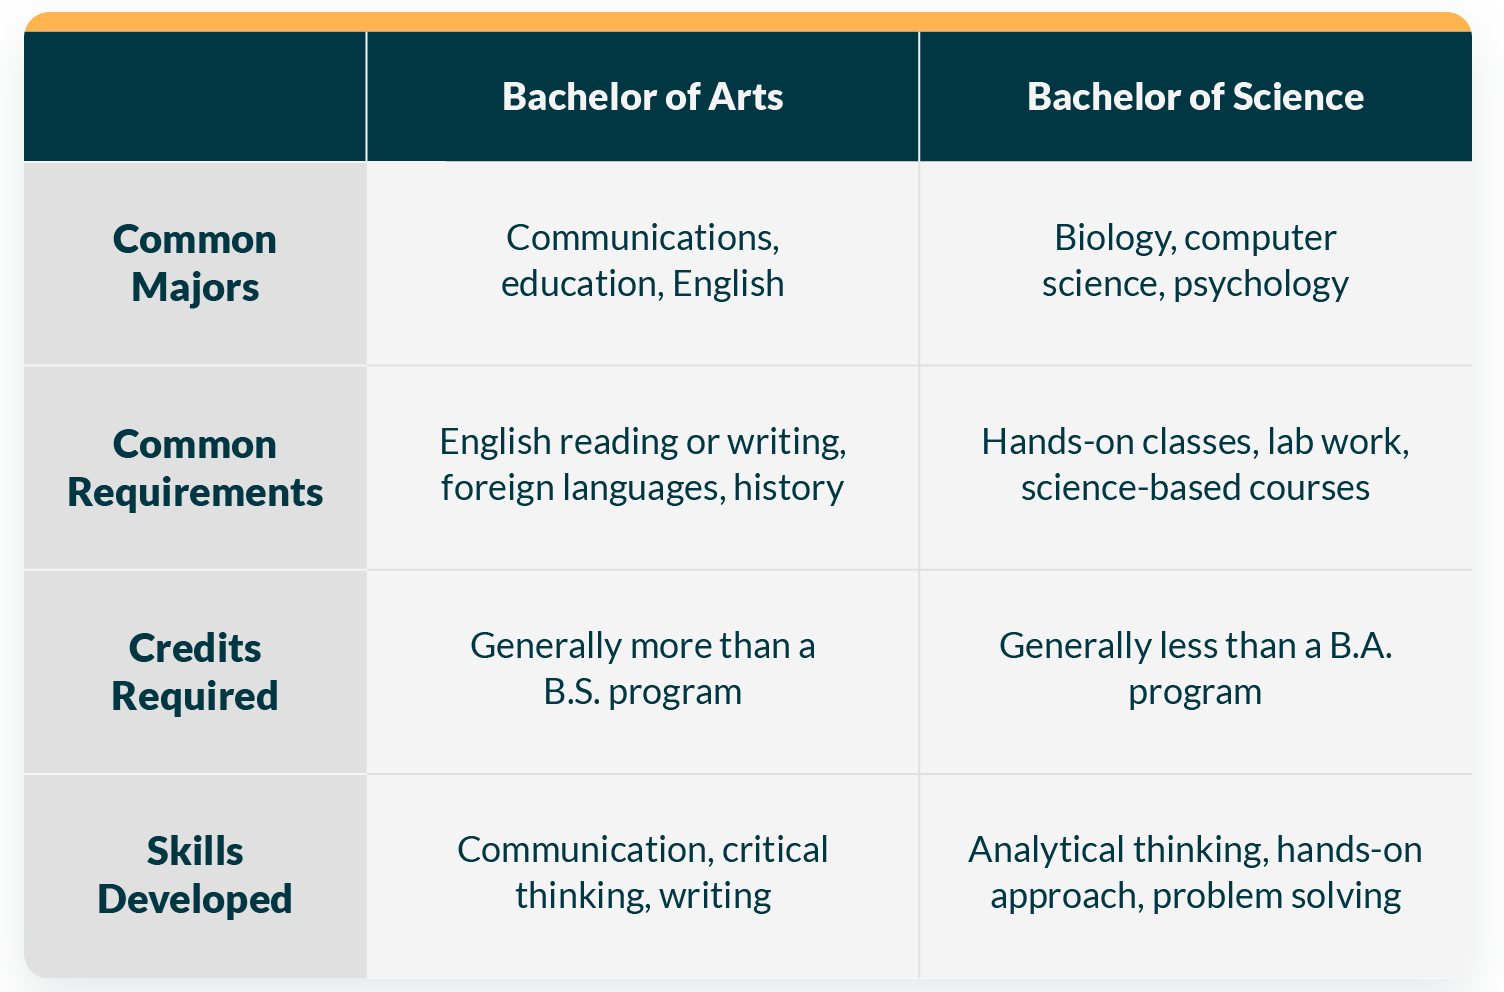 Bachelor of Arts vs Bachelor of Science